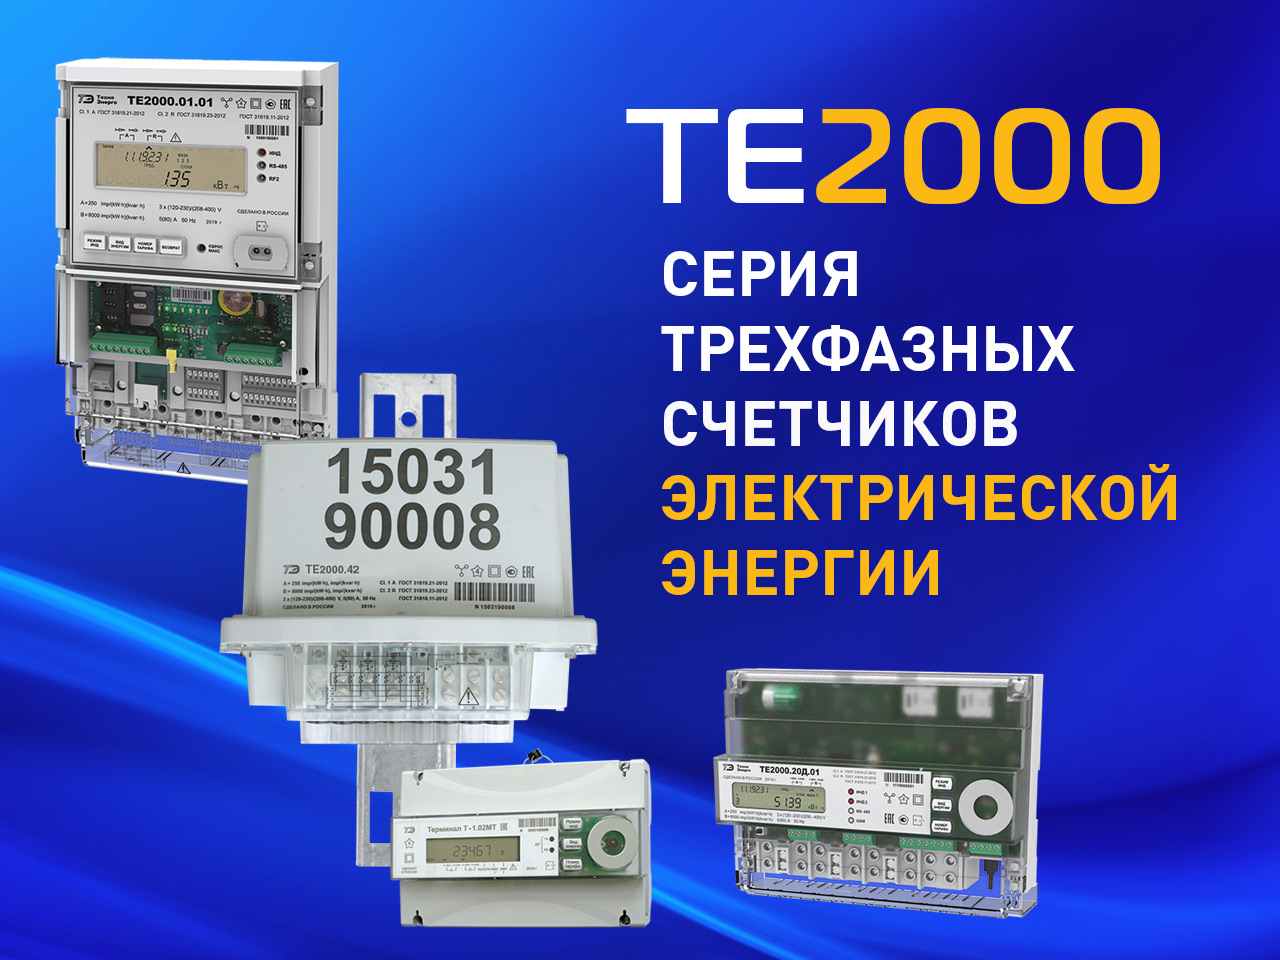 Новая серия трехфазных счетчиков электроэнергии ТЕ2000